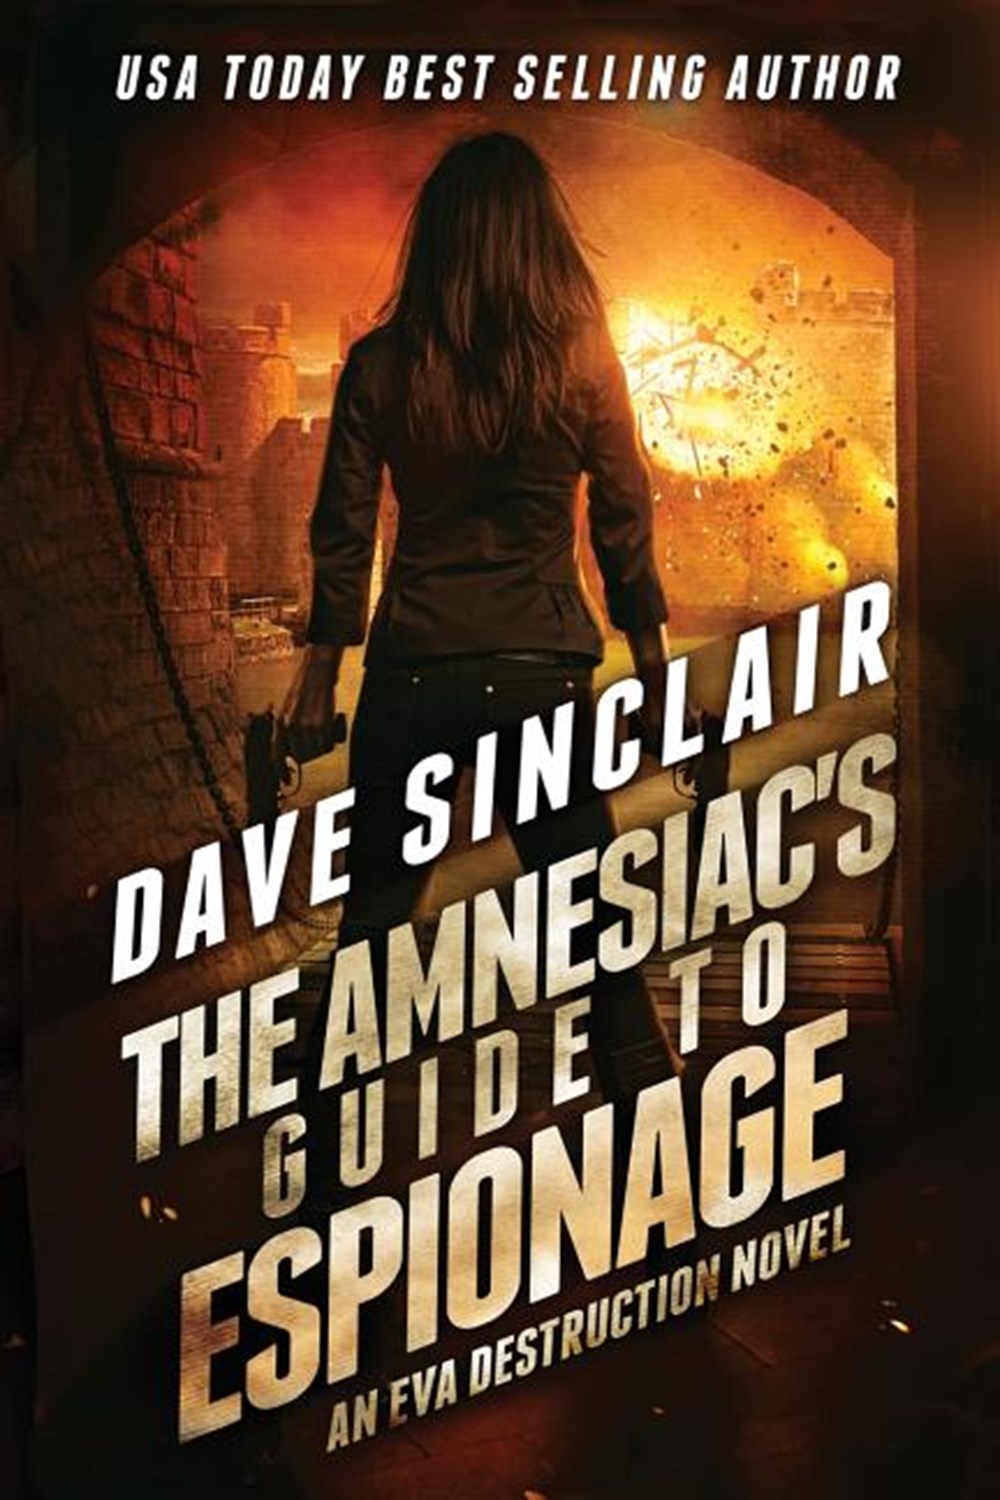 Amnesiac's Guide to Espionage: An Eva Destruction Novel